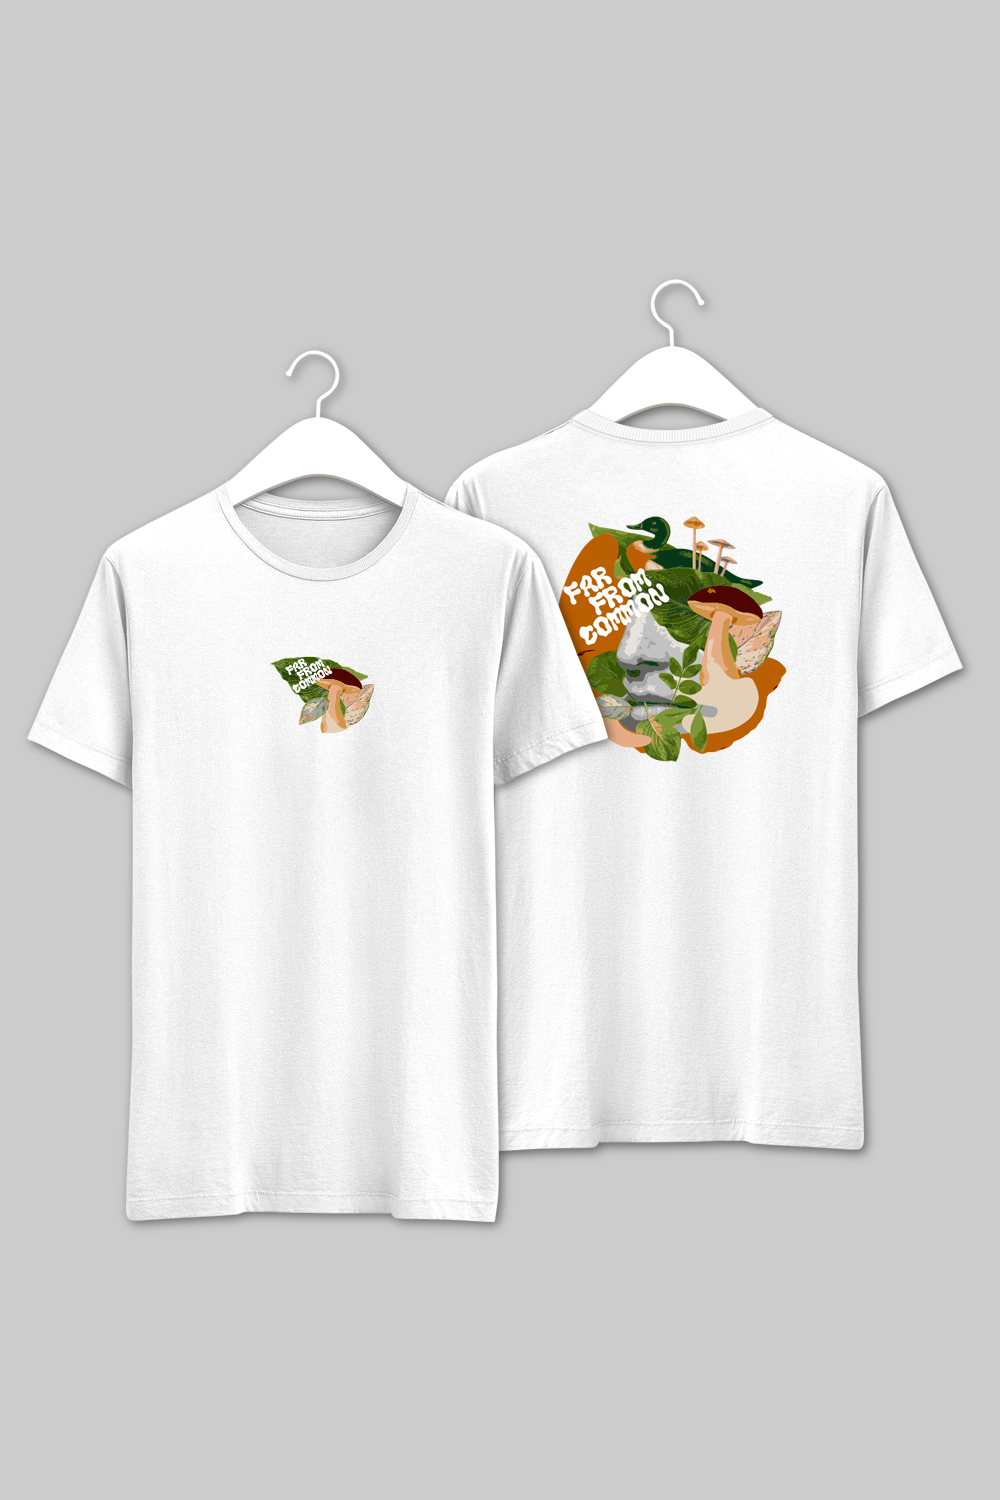 FusionFrenzy White Unisex T-shirt